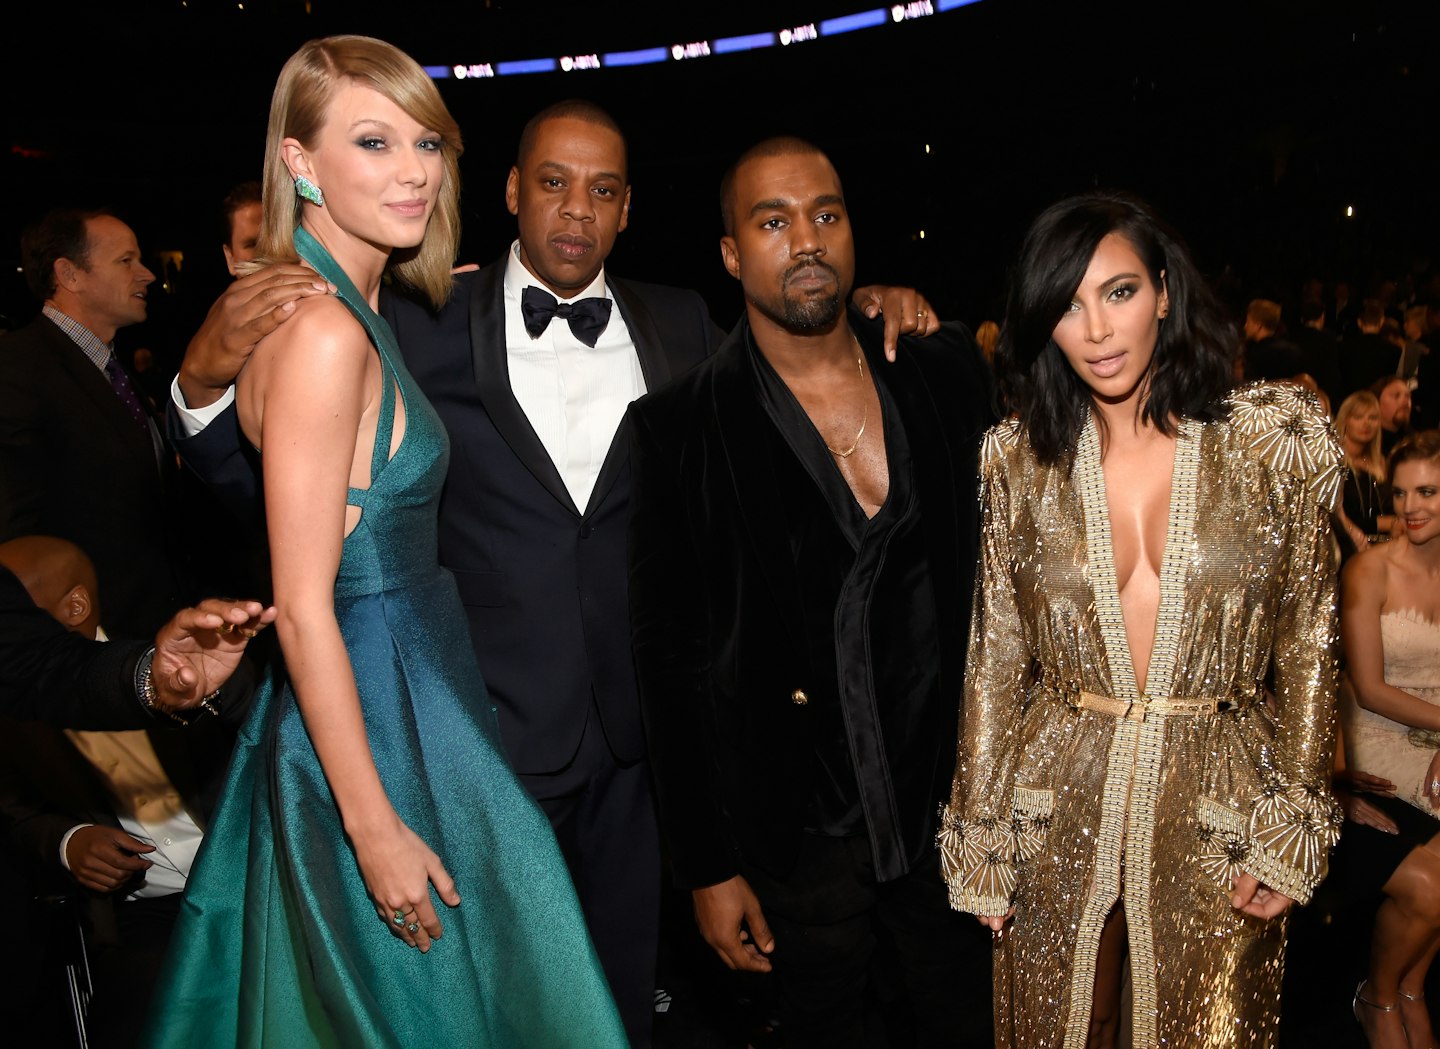 Taylor Swift, Jay Z, Kanye West and Kim Kardashian